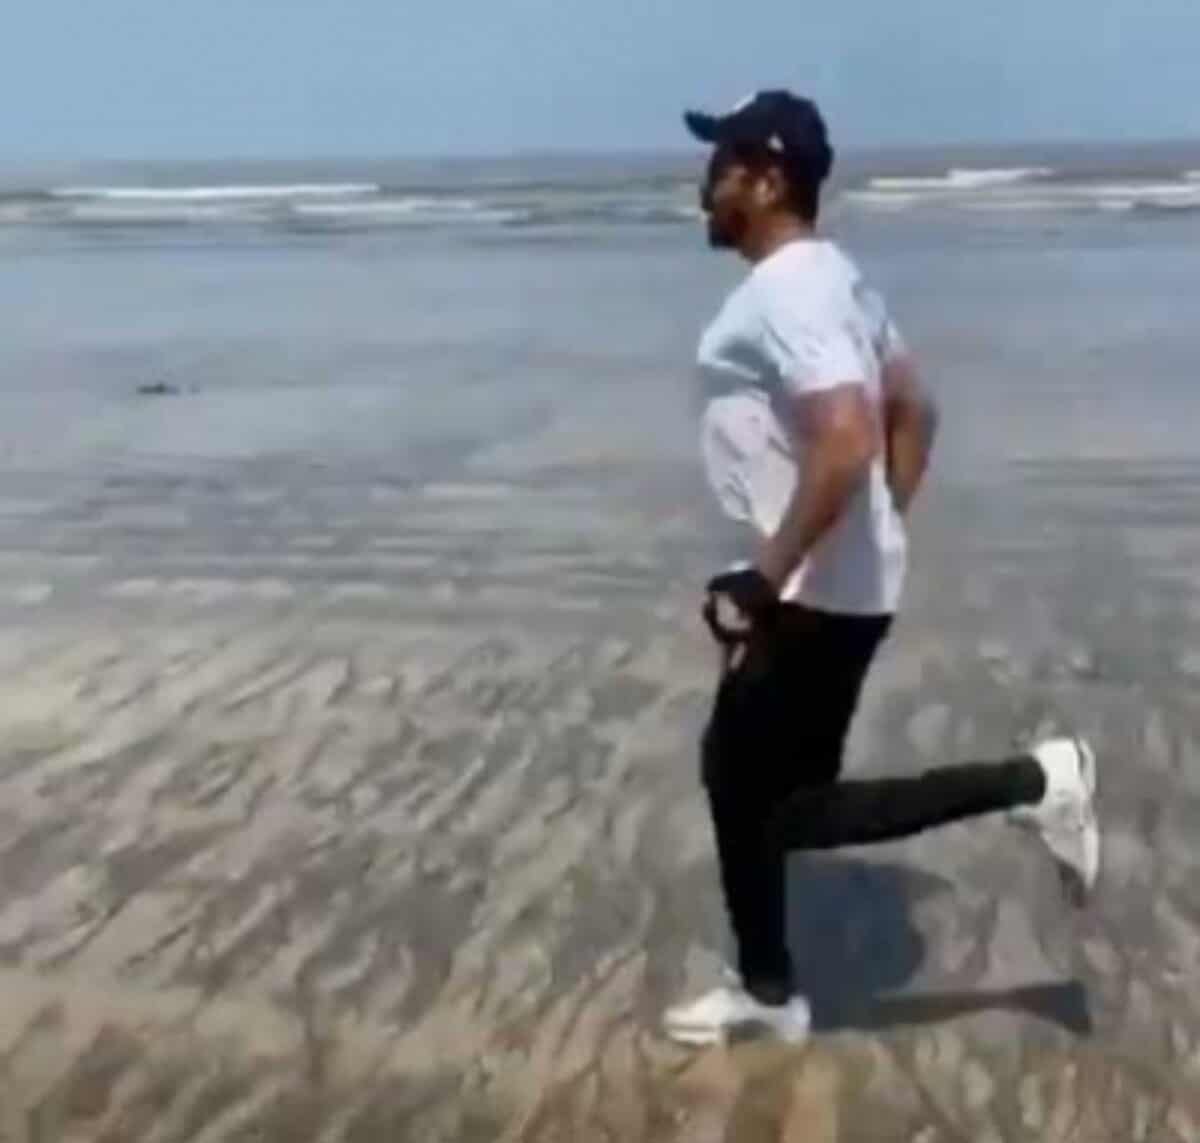 https://cdn.siasat.com/wp-content/uploads/2020/09/Anil-Kapoor-turns-beach-into-workout-spot-1200x1143.jpg